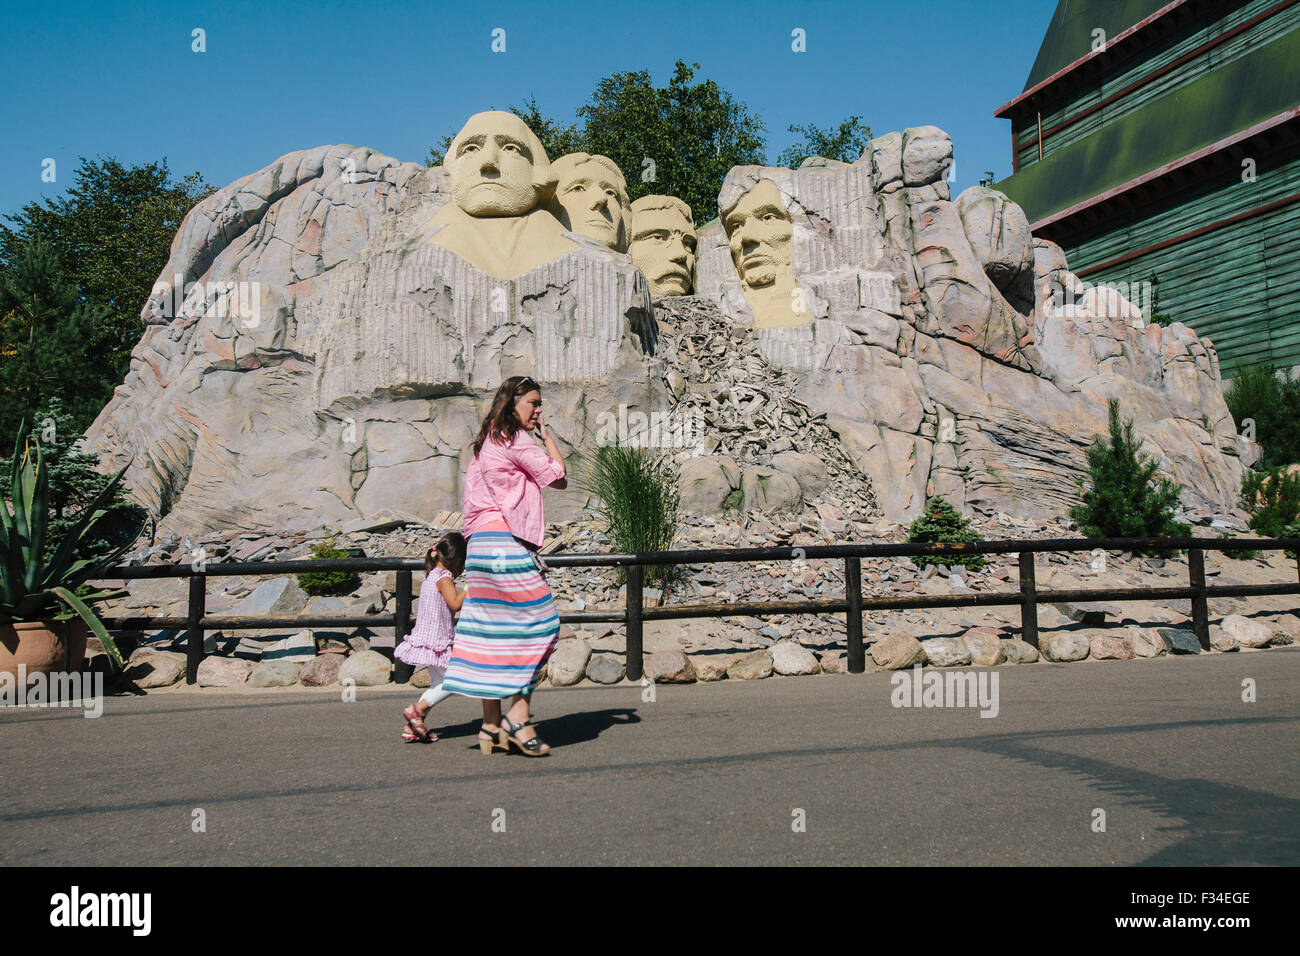 Billund, Dänemark -23 Aug 2015- National Memorial, Mount Rushmore Modell mit lego-Stücken im Legoland Freizeitpark. Stockfoto